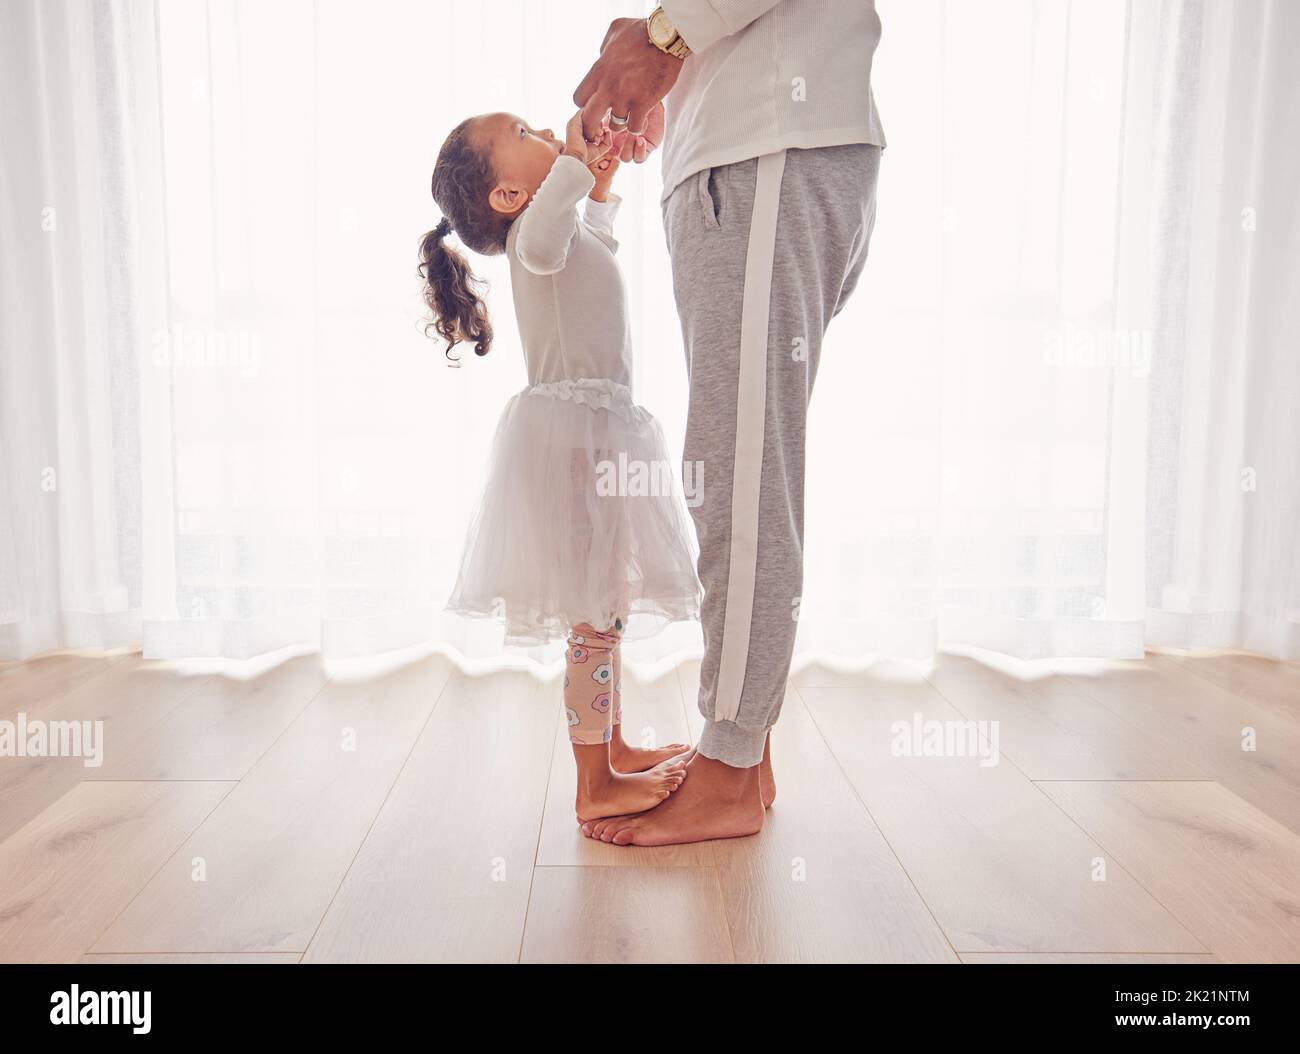 Familie, Tanz und Tochter auf Papa Füße zusammen auf dem Boden des Innenraums für Glück, Kindheit und Bindung. Pflege, Liebe und Jugend mit Vater tanzen Stockfoto